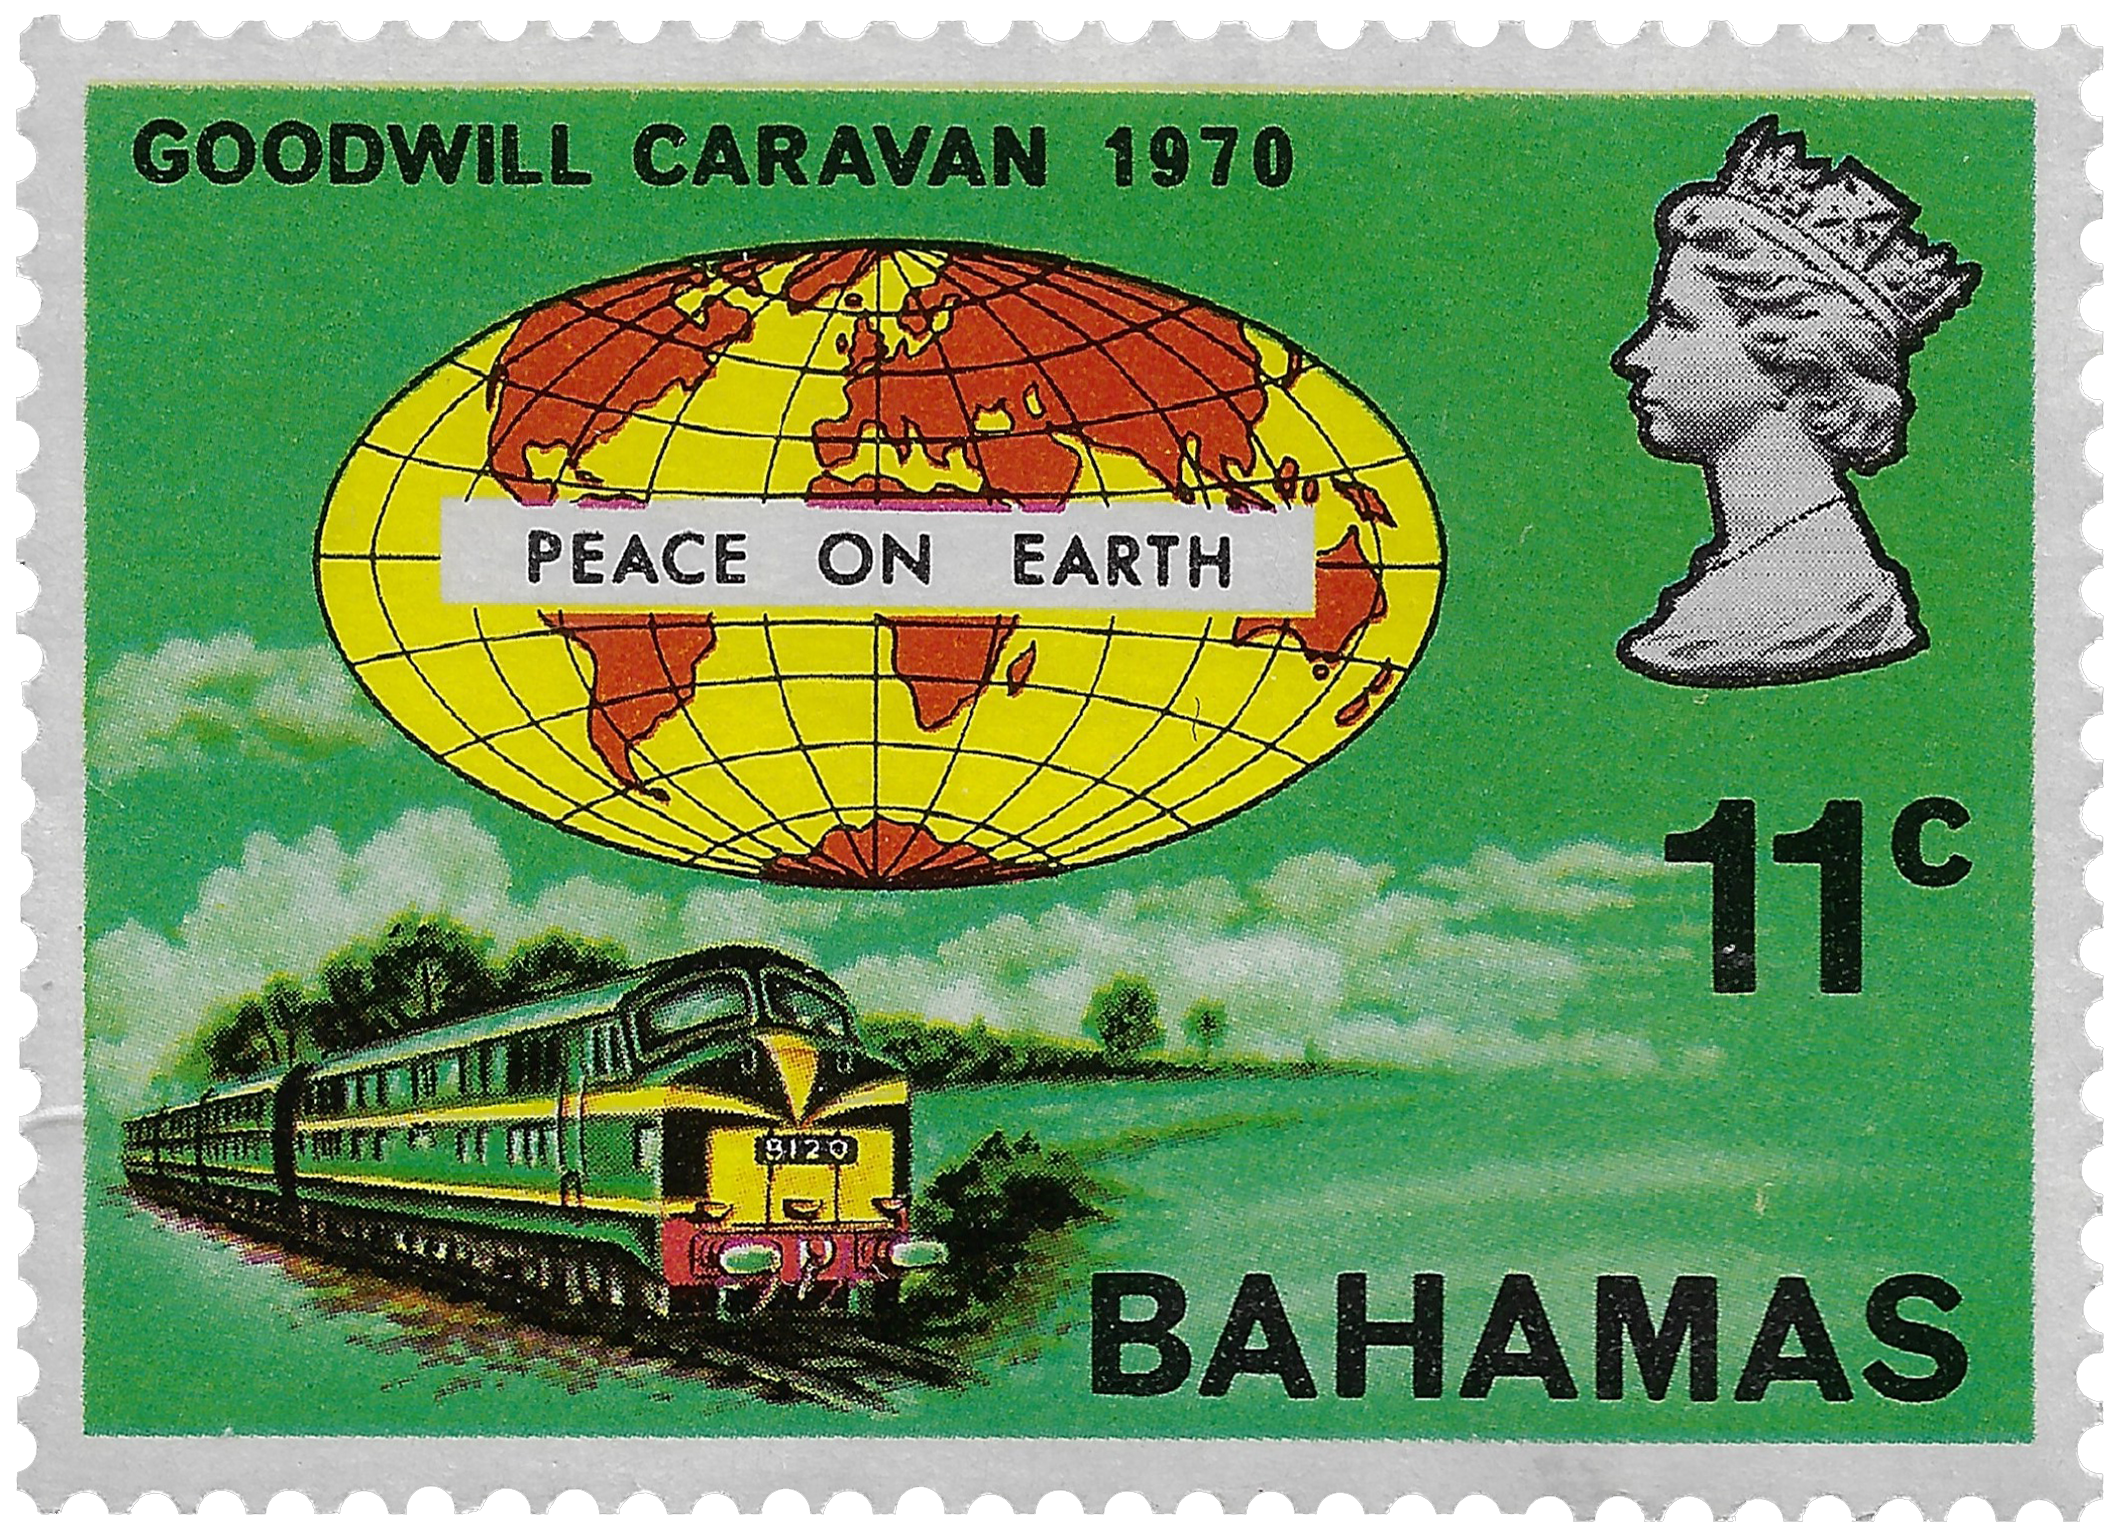 11c 1970, Goodwill Caravan, Peace on Earth